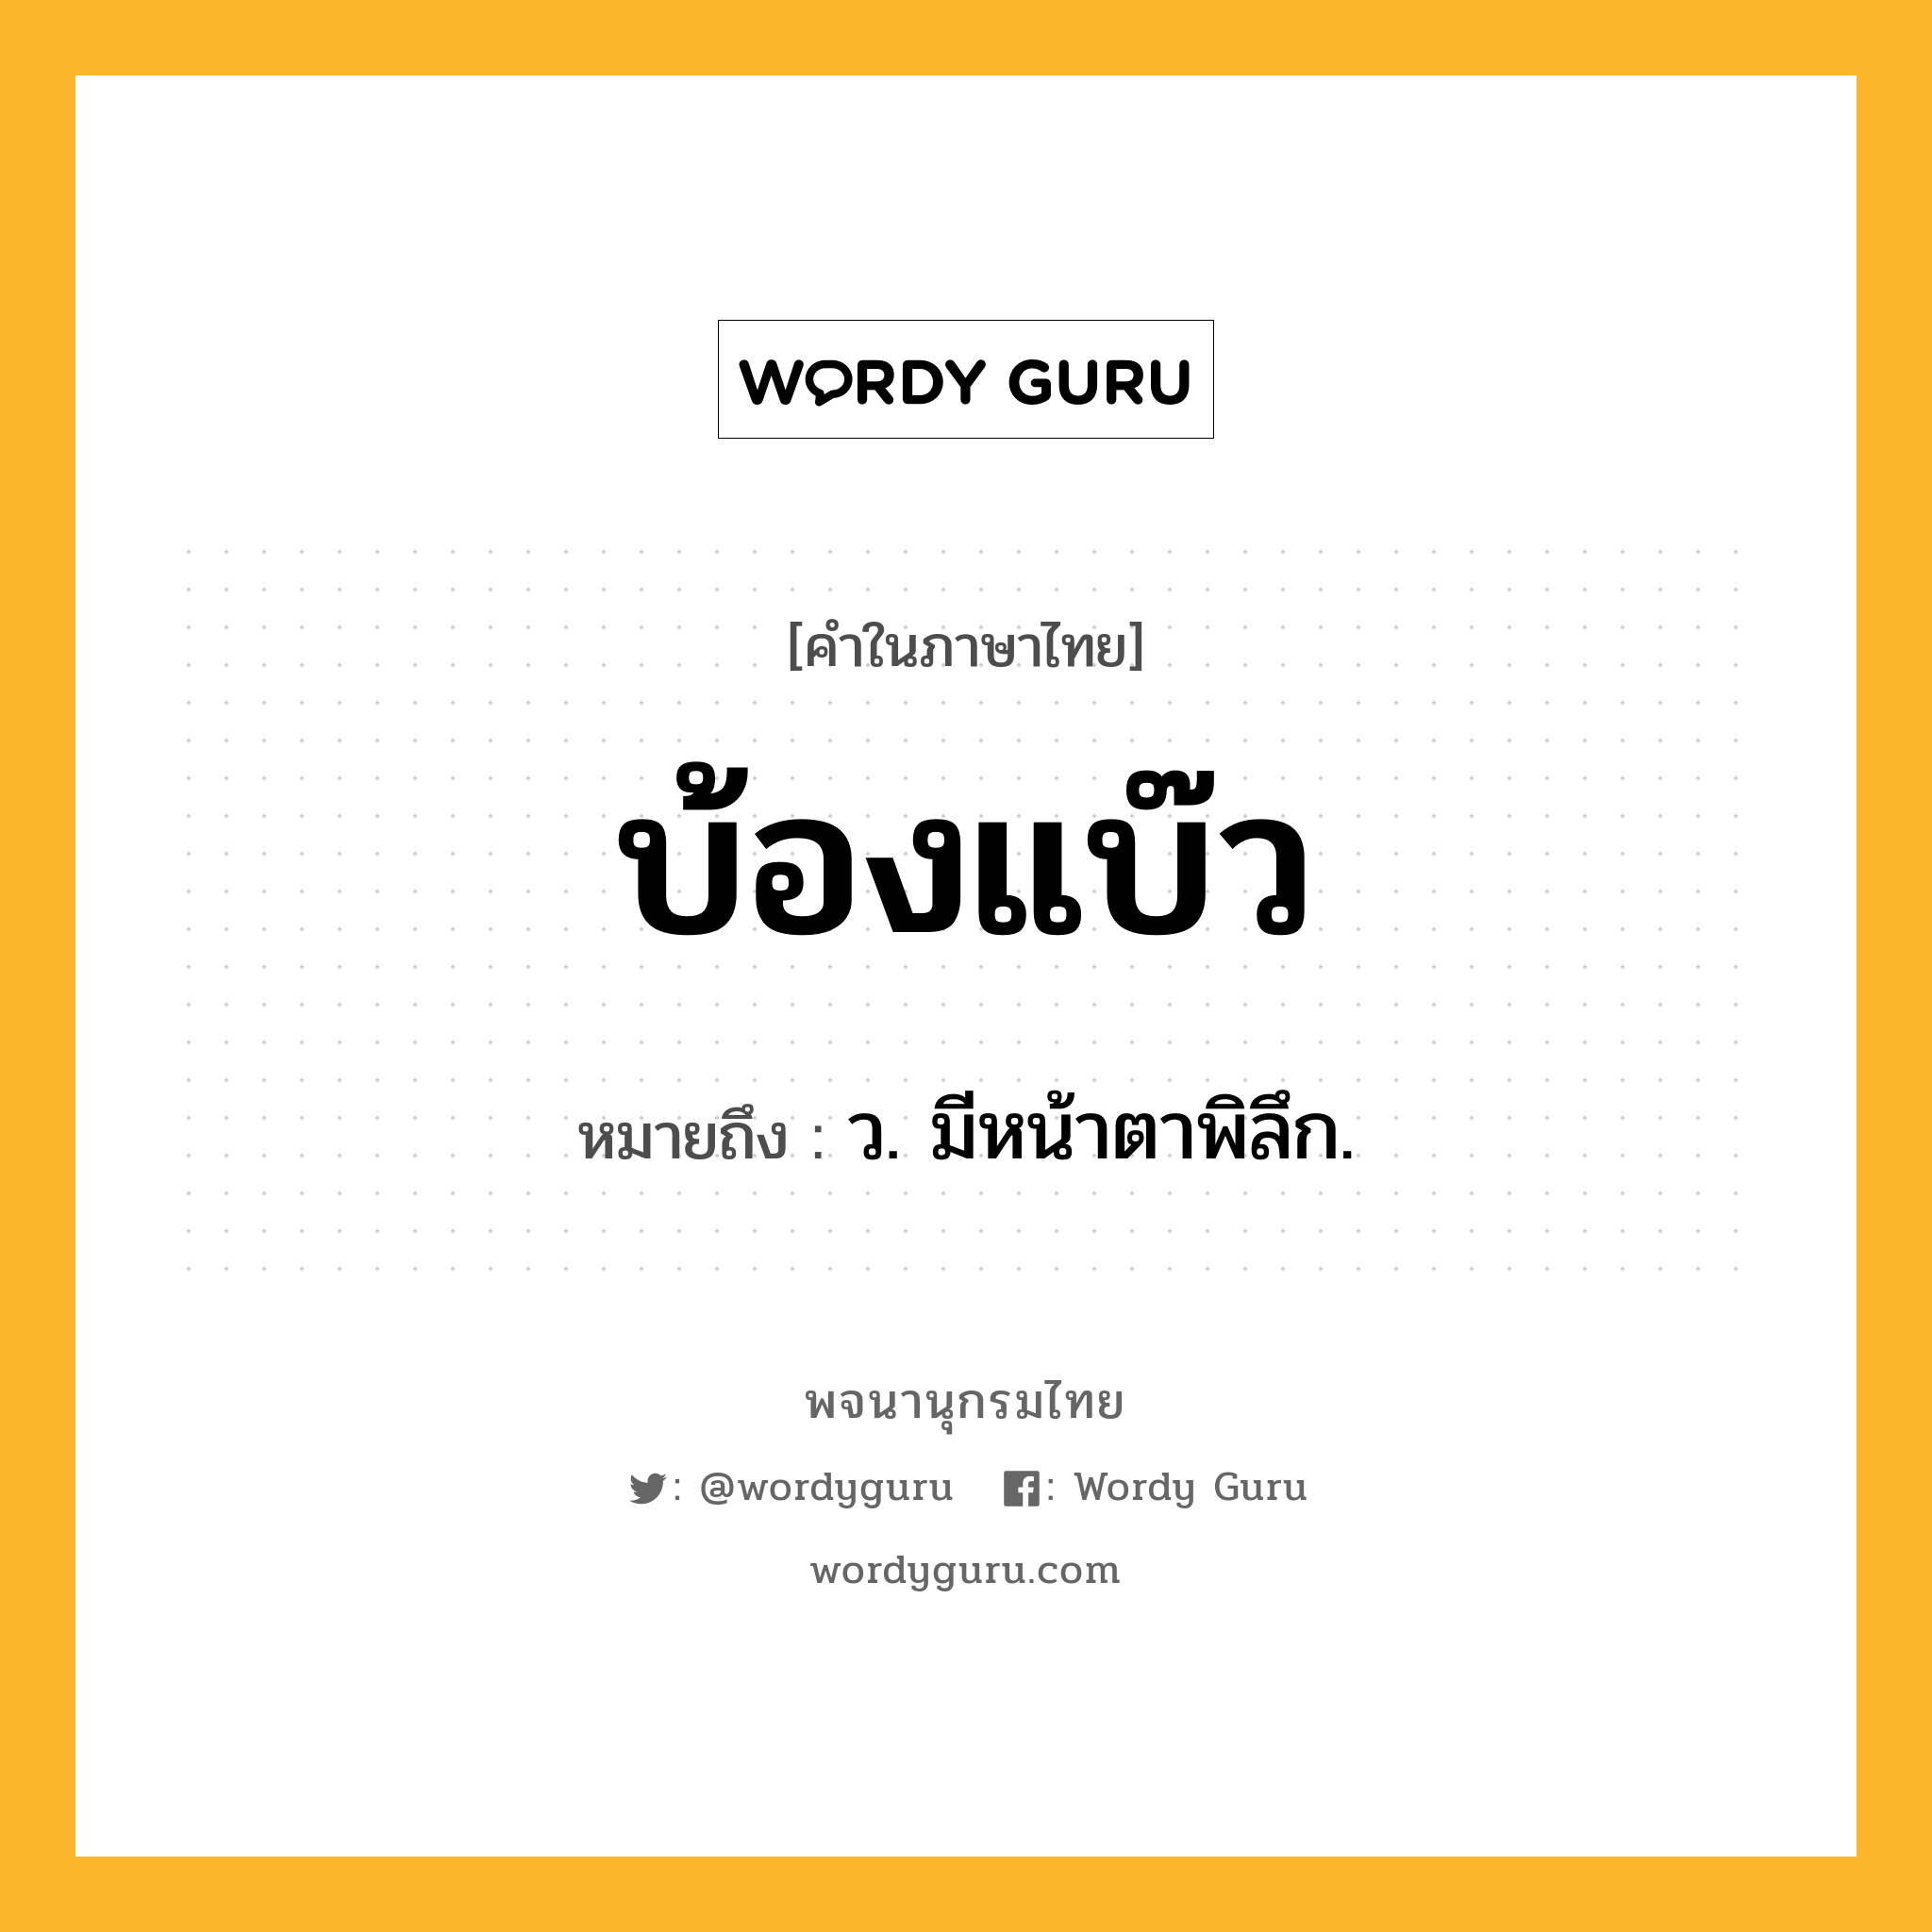 บ้องแบ๊ว ความหมาย หมายถึงอะไร?, คำในภาษาไทย บ้องแบ๊ว หมายถึง ว. มีหน้าตาพิลึก.